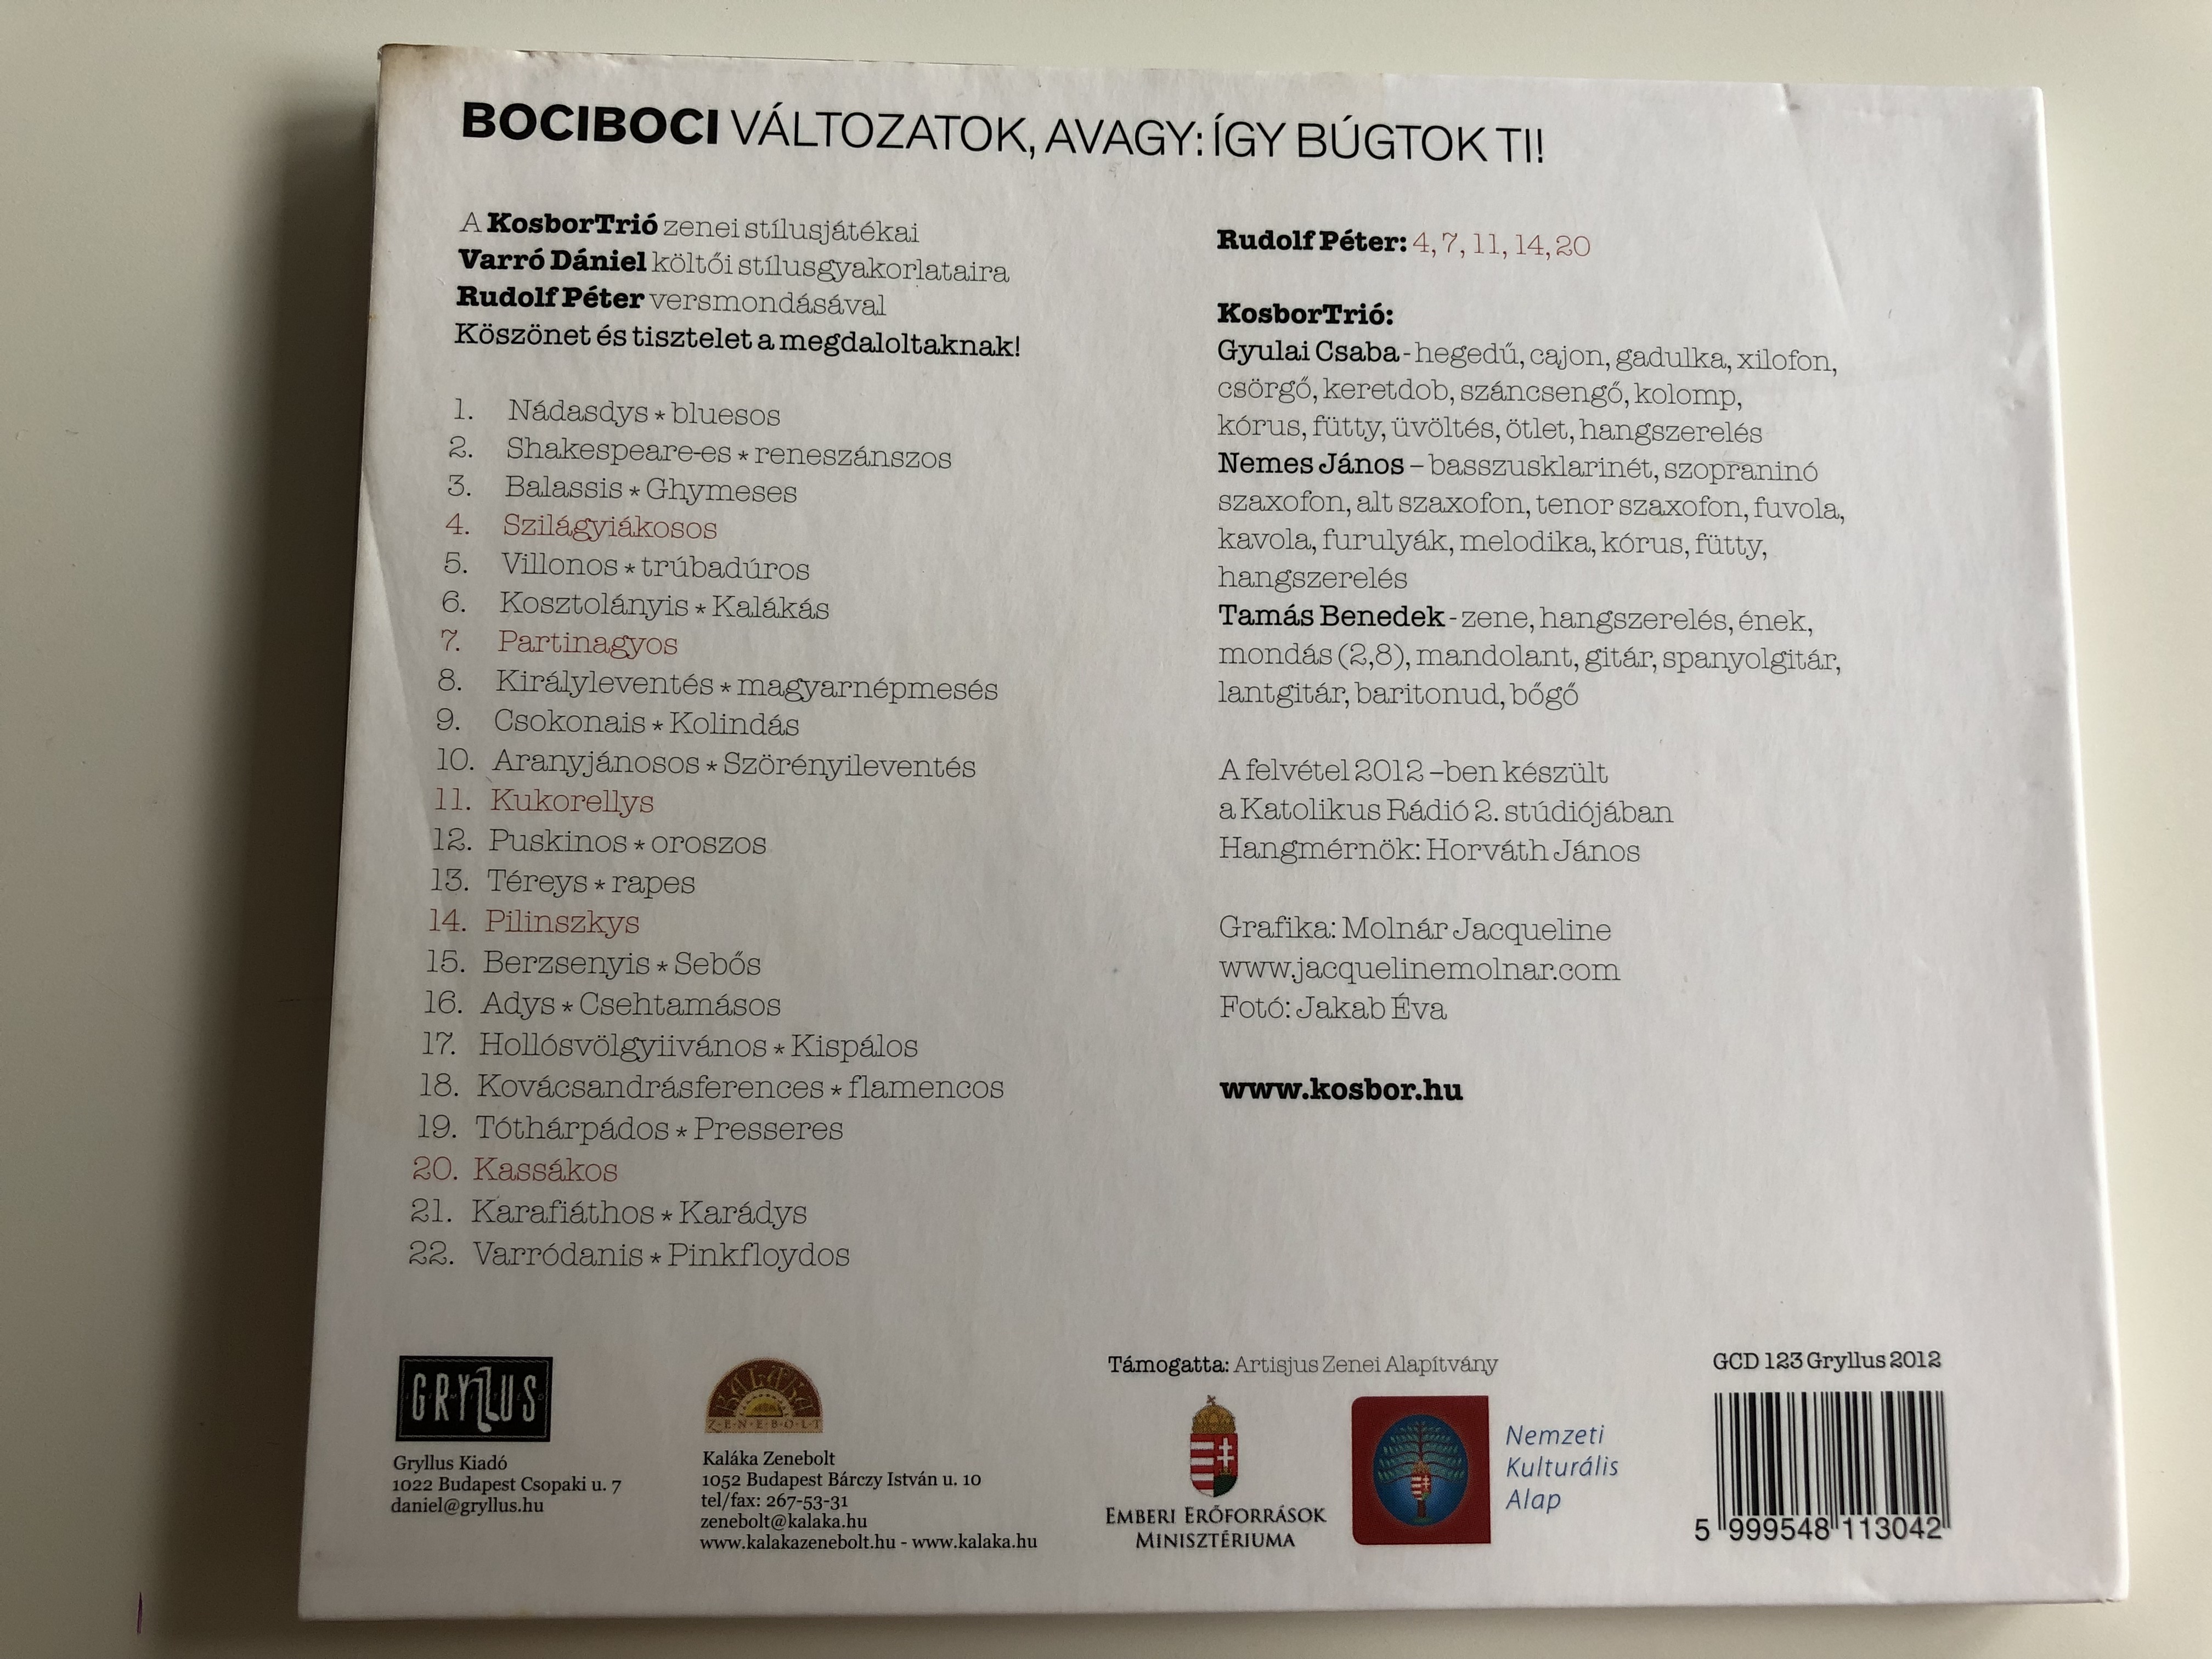 bociboci-gy-b-gtok-ti-varr-d-niel-kosbortri-rudolf-p-ter-audio-cd-2012-gcd-123-gryllus-10-.jpg